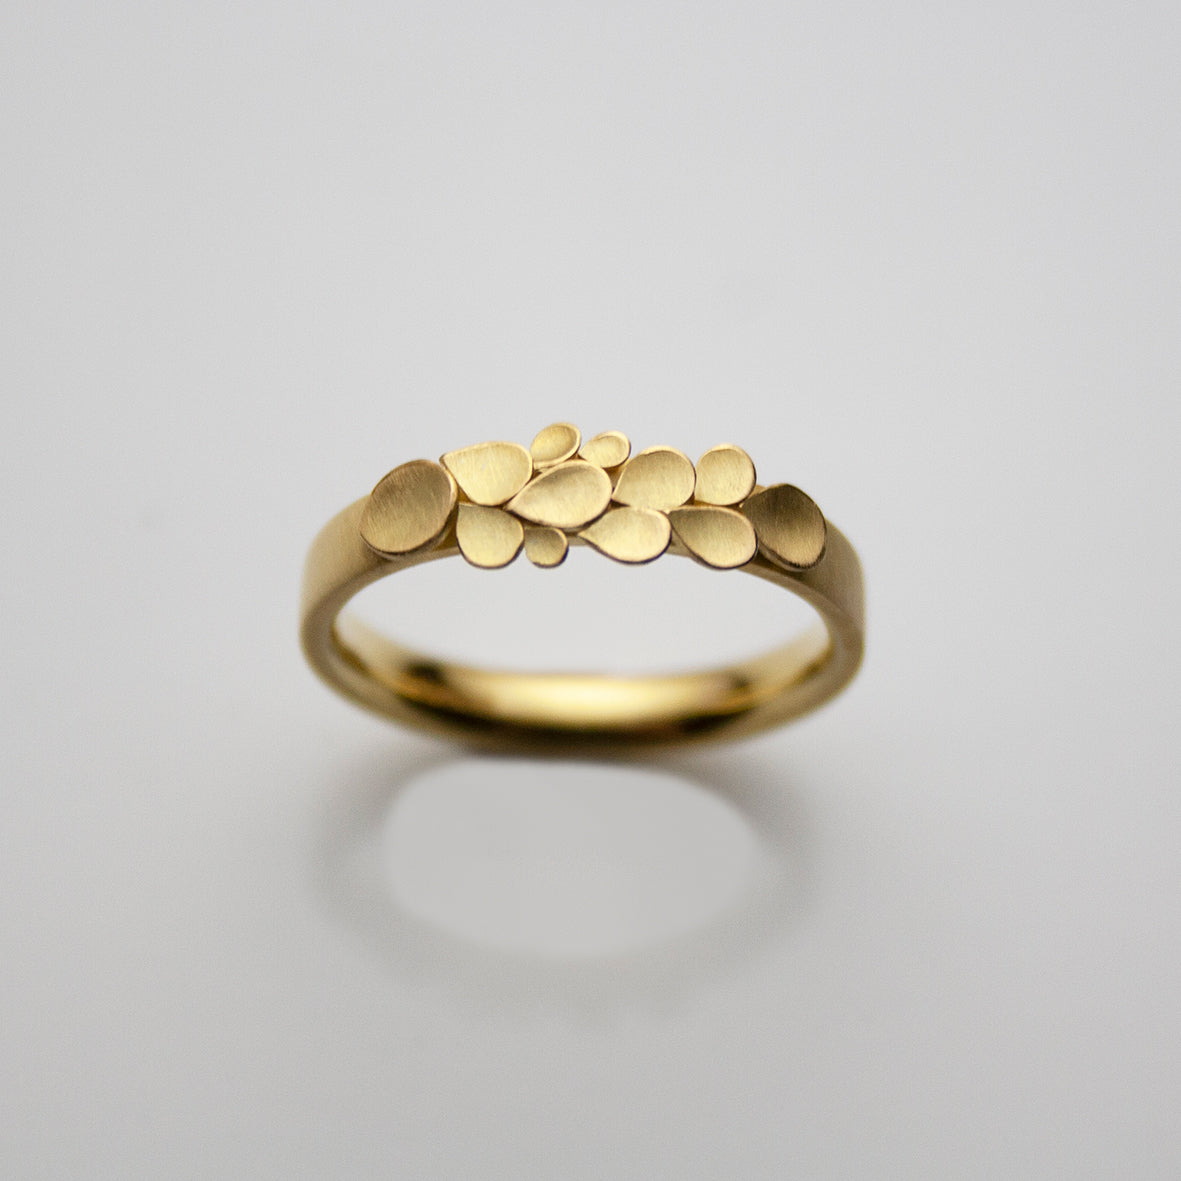 ring design for women gold | Ring design for female, Simple ring design, Gold  ring designs